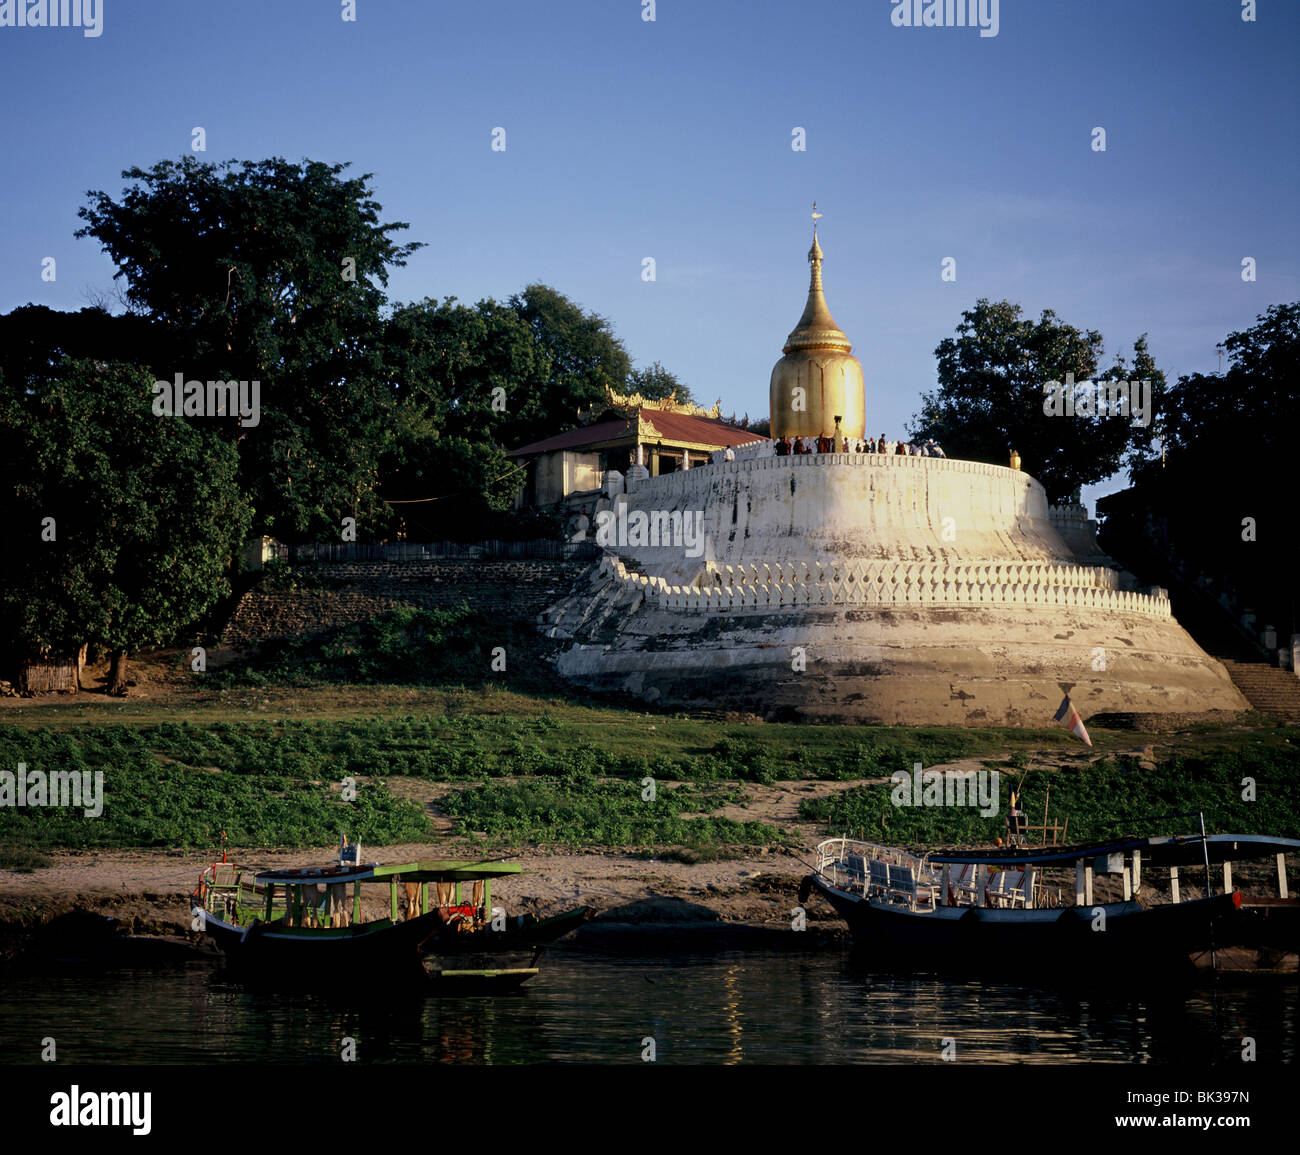 Pagode Bupaya sur les rives de la rivière Irrawaddy, Bagan (Pagan), le Myanmar (Birmanie), l'Asie Banque D'Images